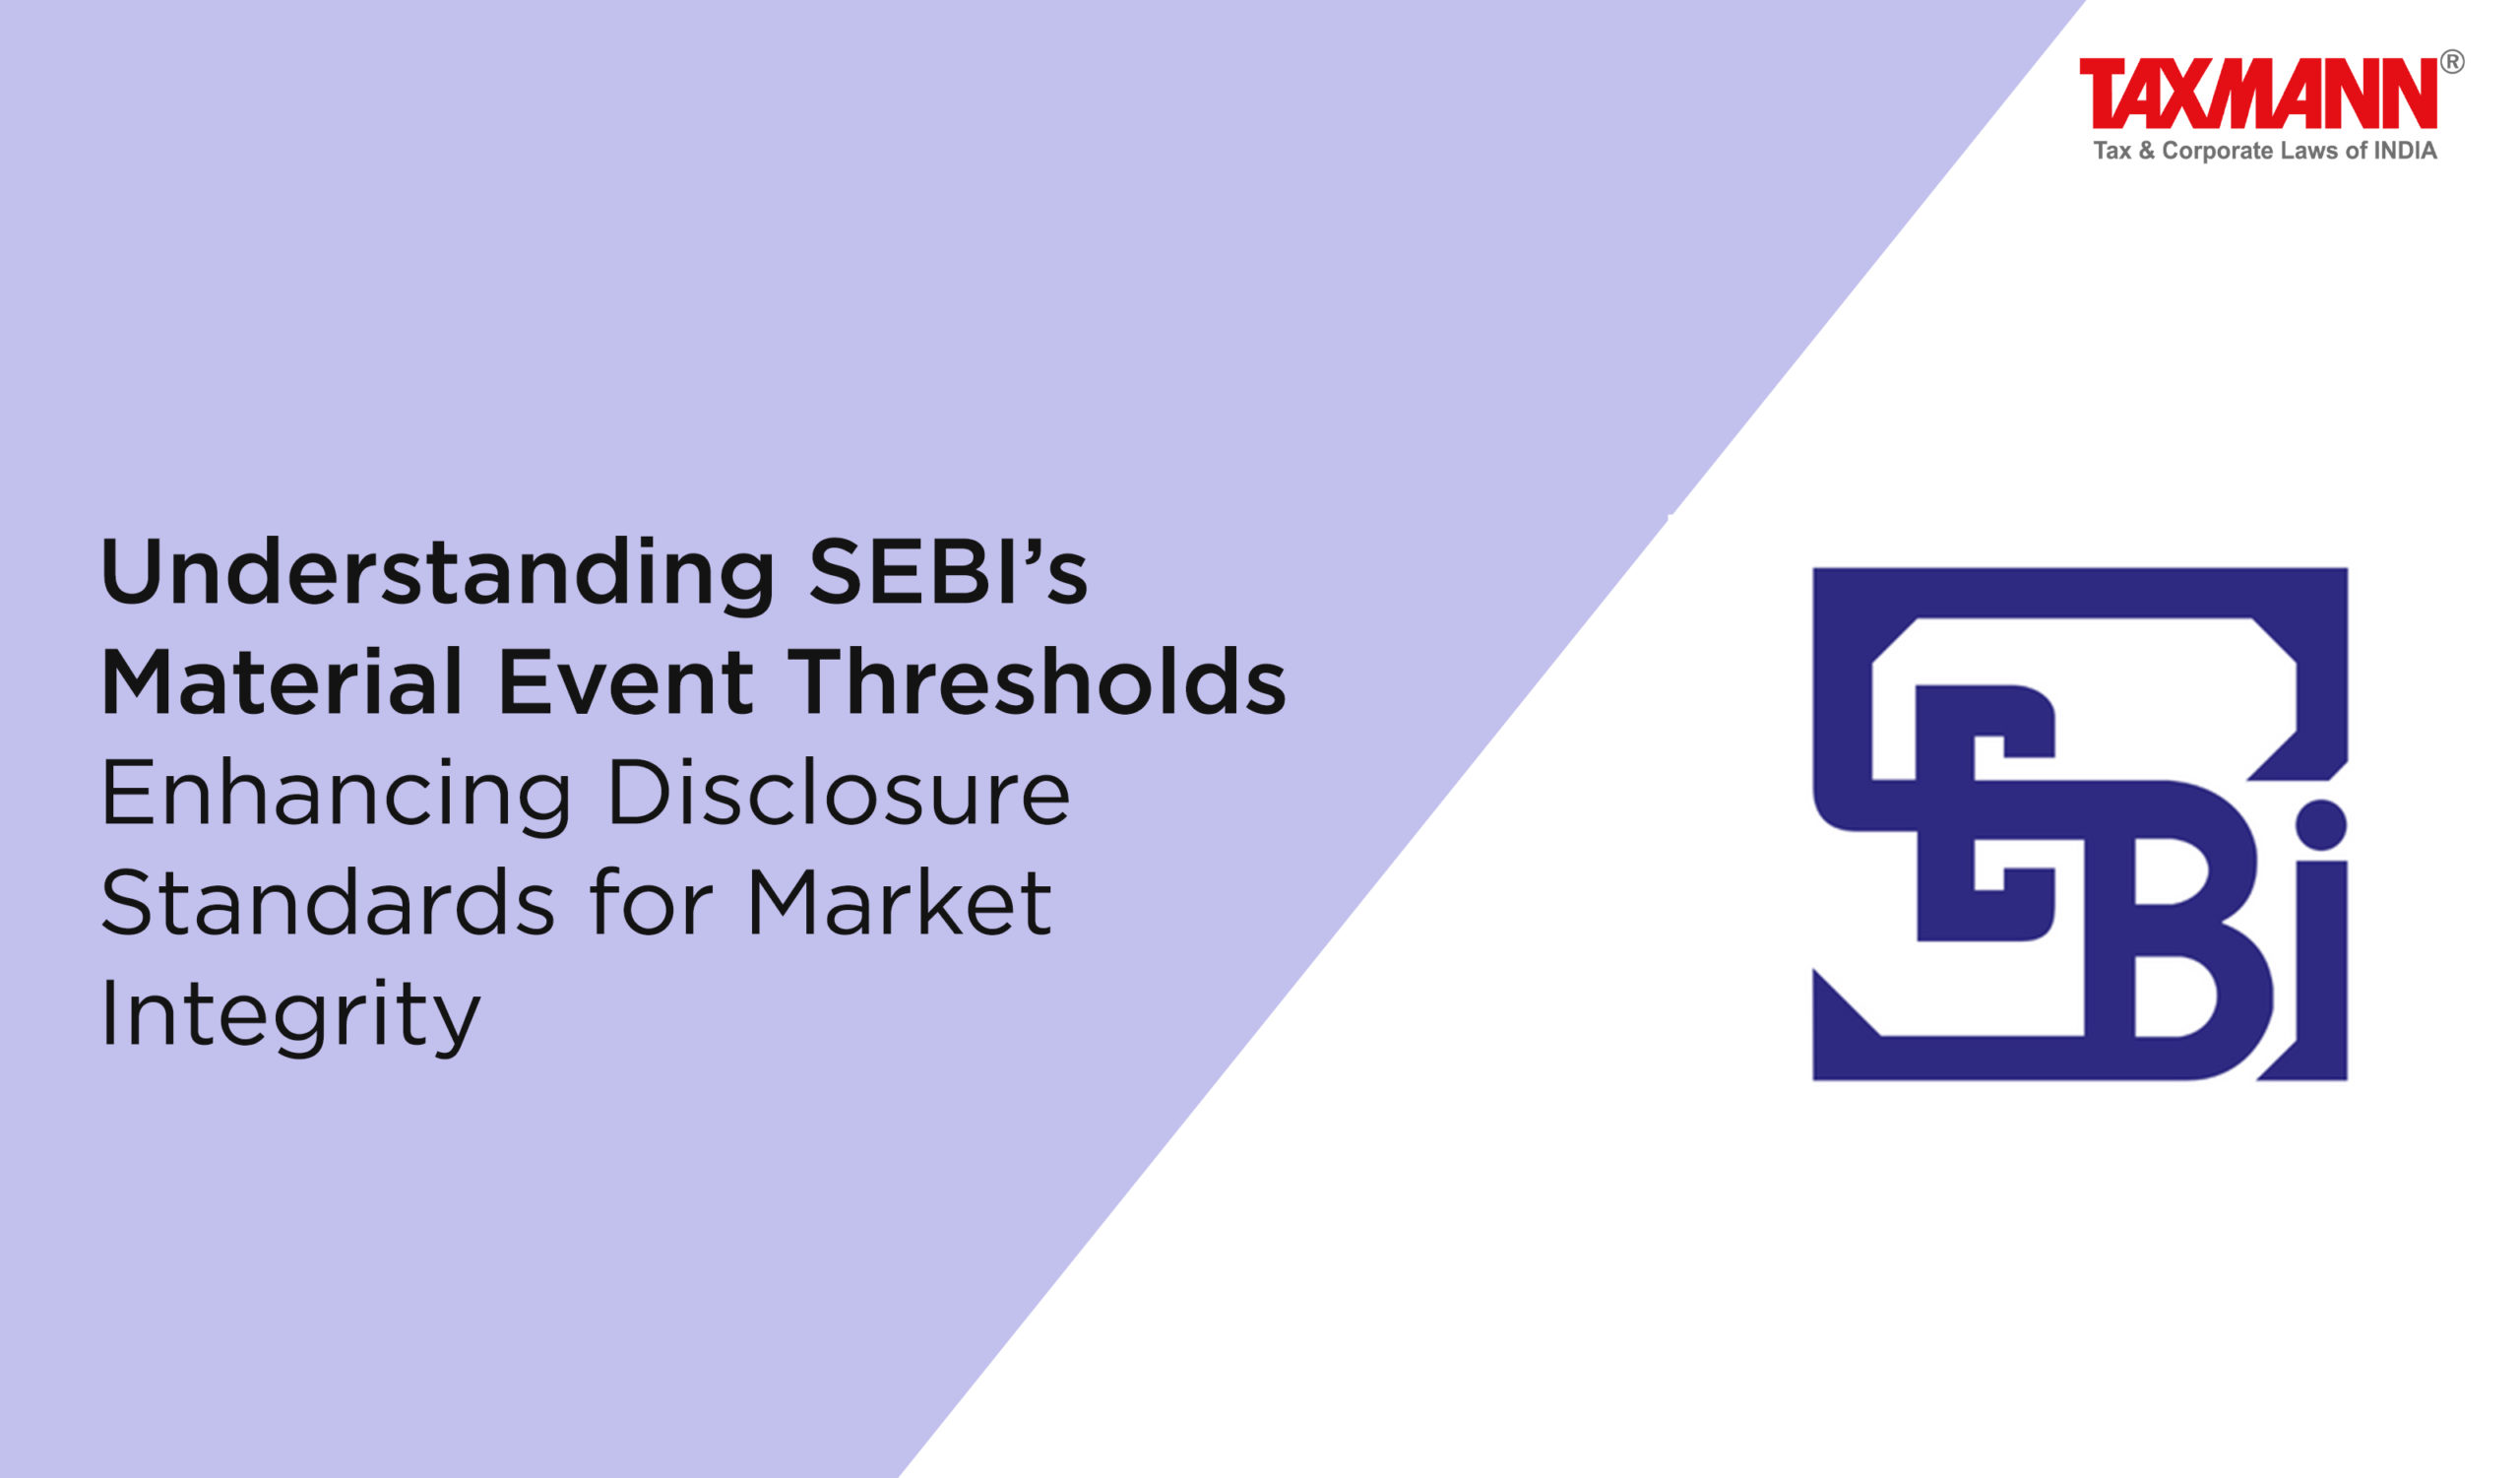 SEBI's Material Event Thresholds